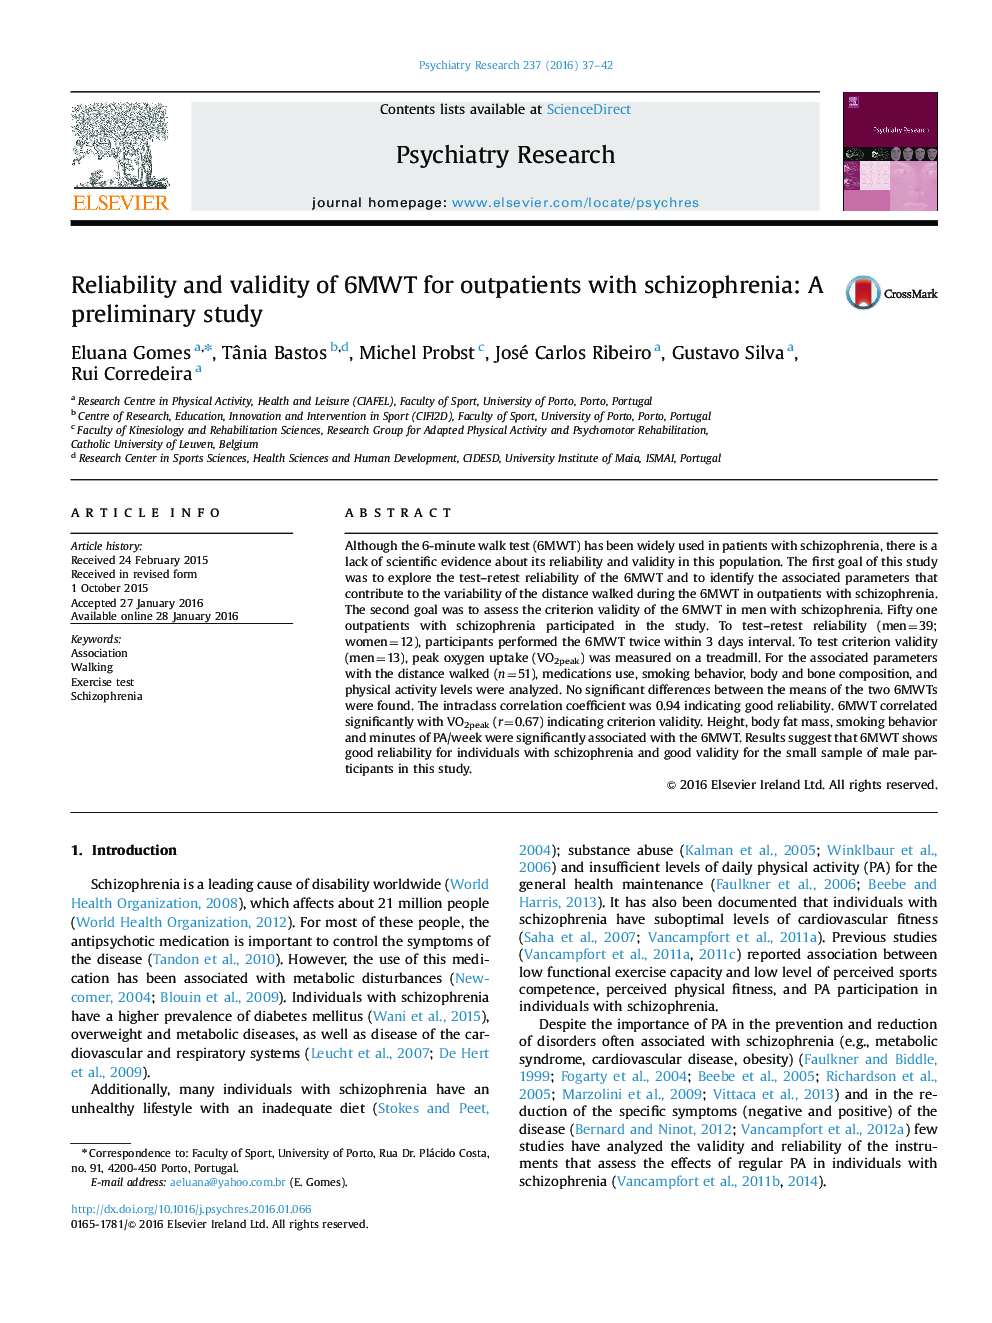 قابلیت اطمینان و اعتبار 6MWT برای بیماران سرپایی مبتلا به اسکیزوفرنی: یک مطالعه مقدماتی